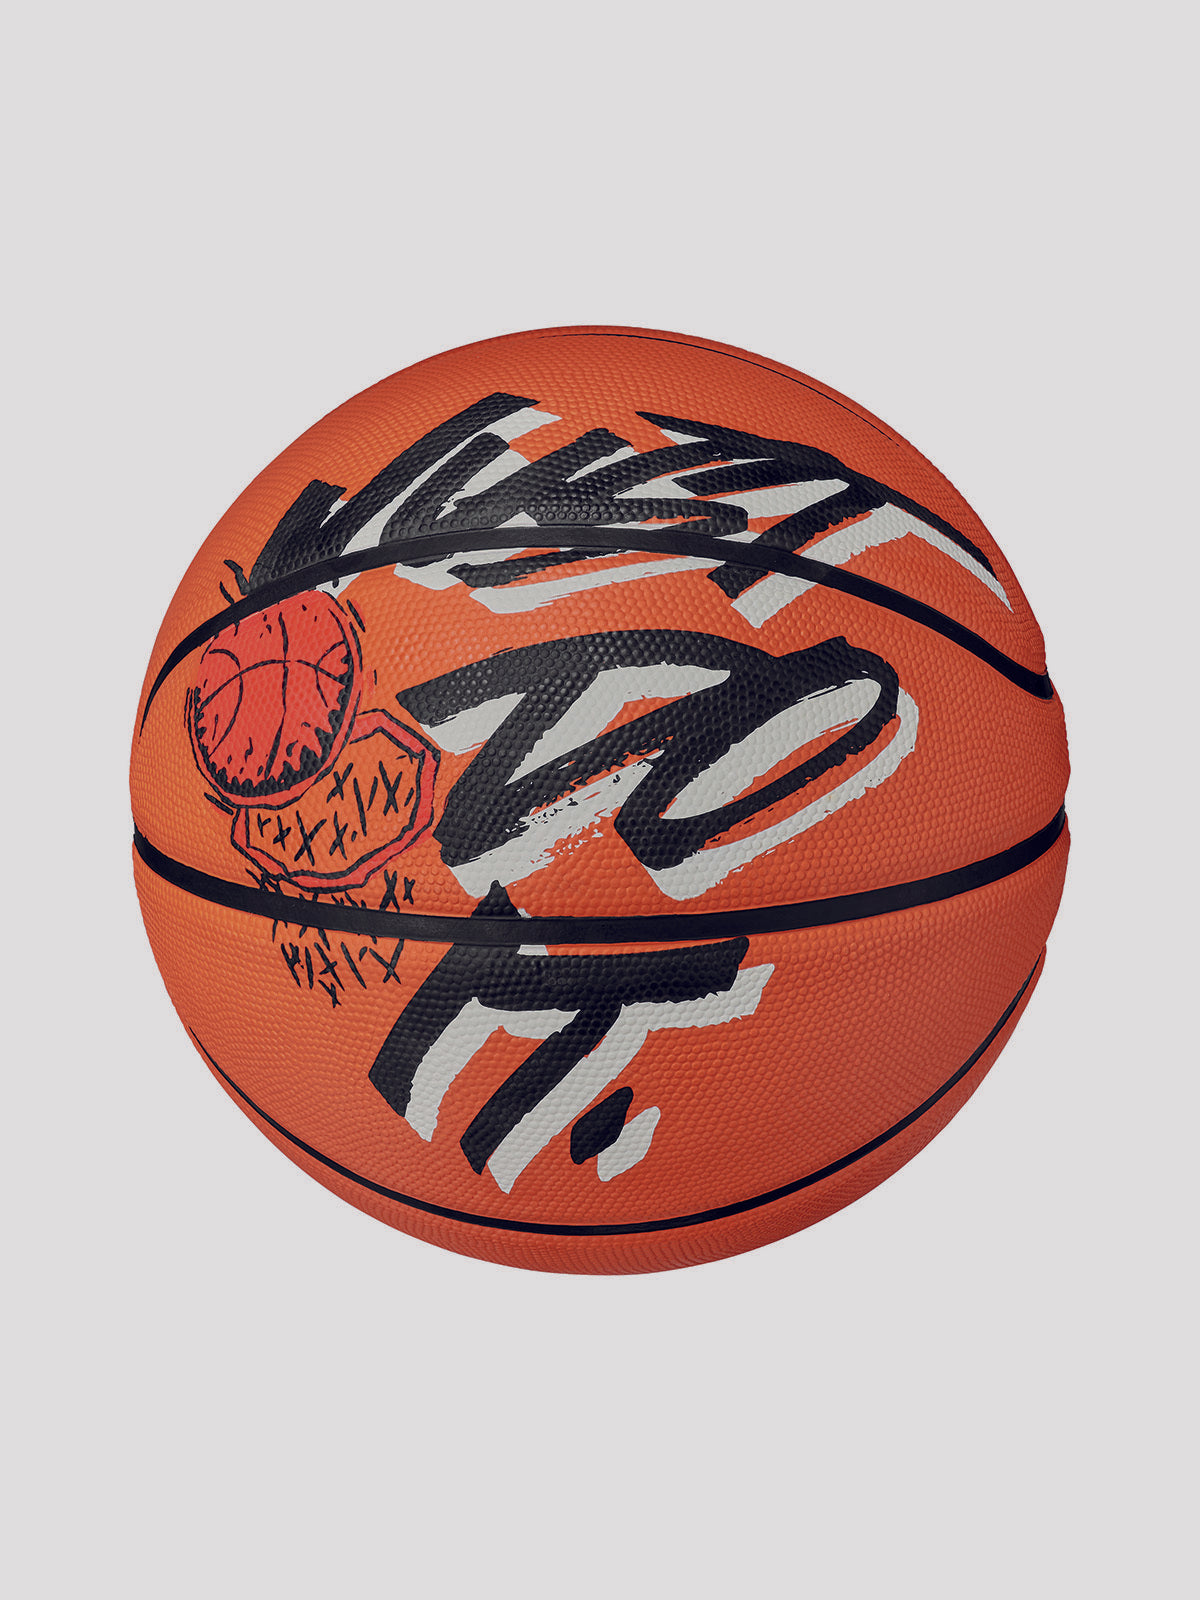 כדור כדורסל גומי Outdoor עם הדפס גרפי